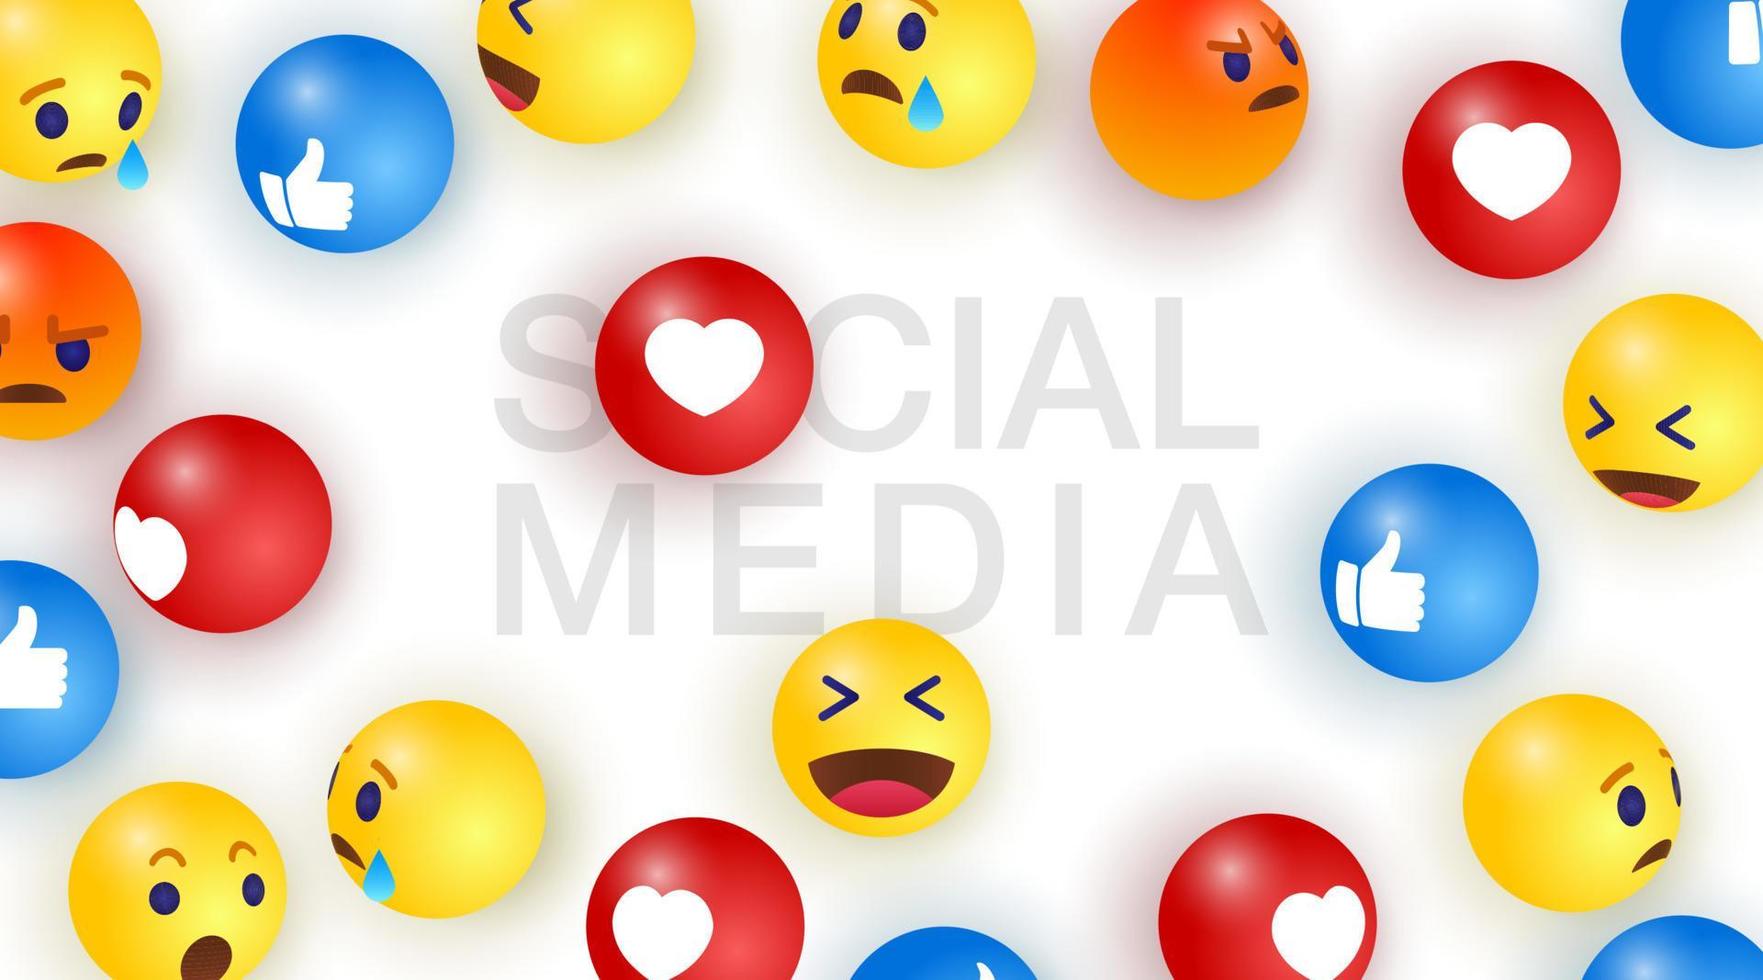 social media med emoji bakgrund med grupp av abstrakt smiley uttryckssymboler, emoji. vektor illustration